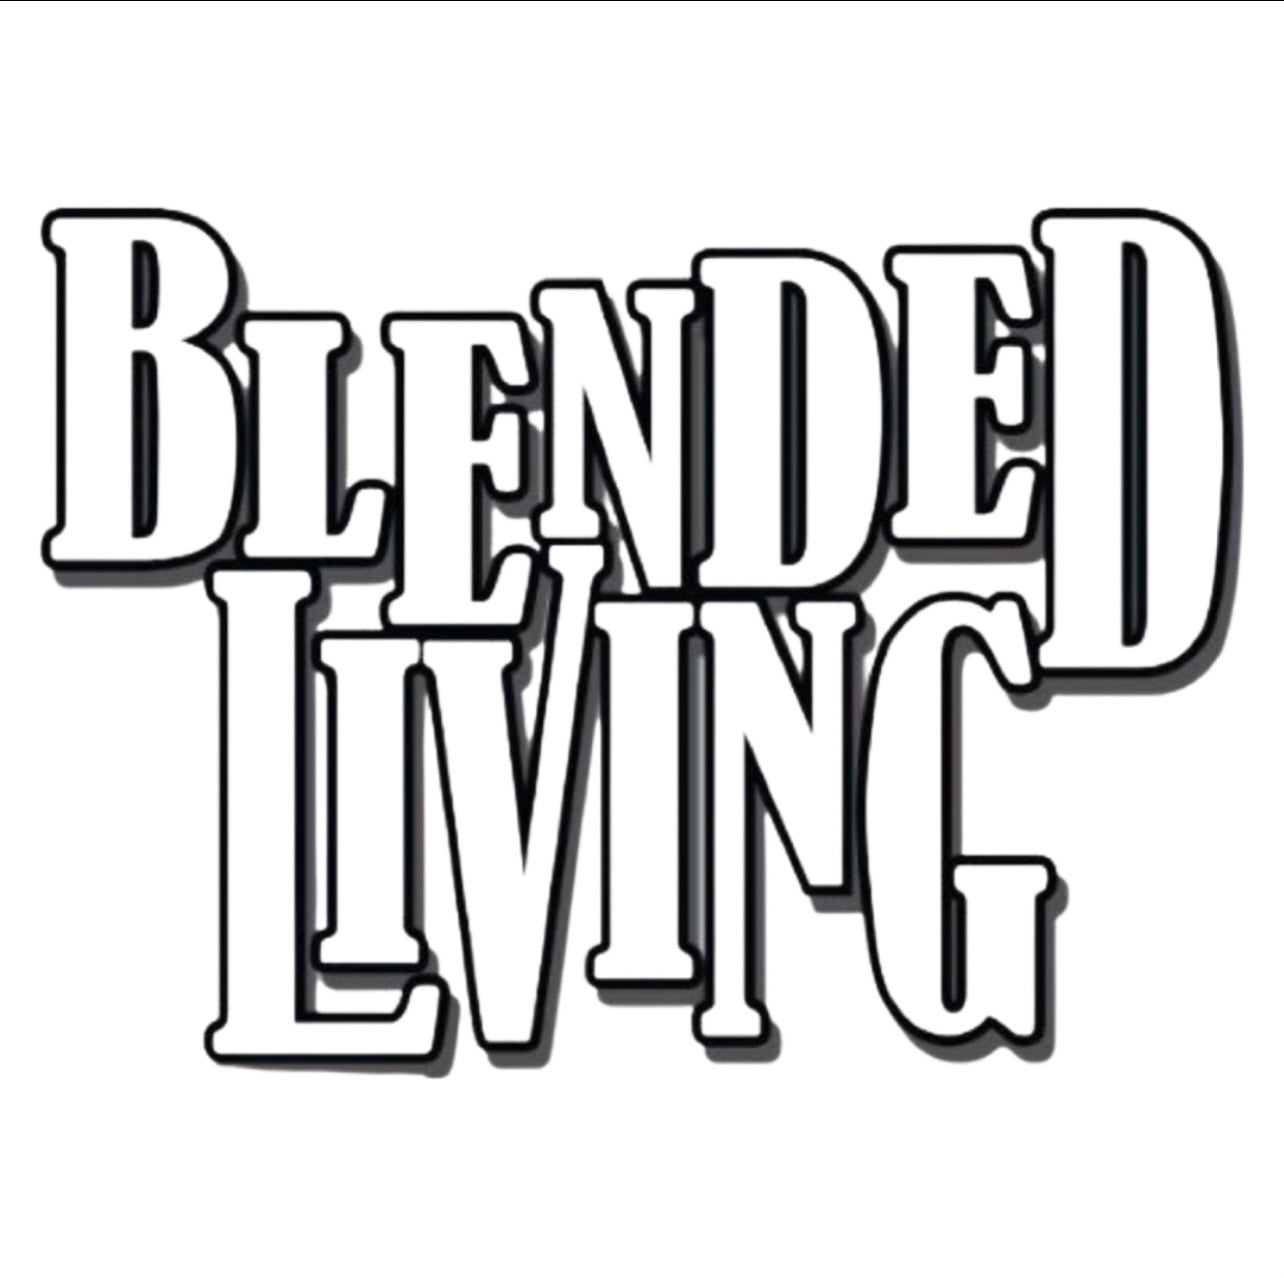 Blended Living